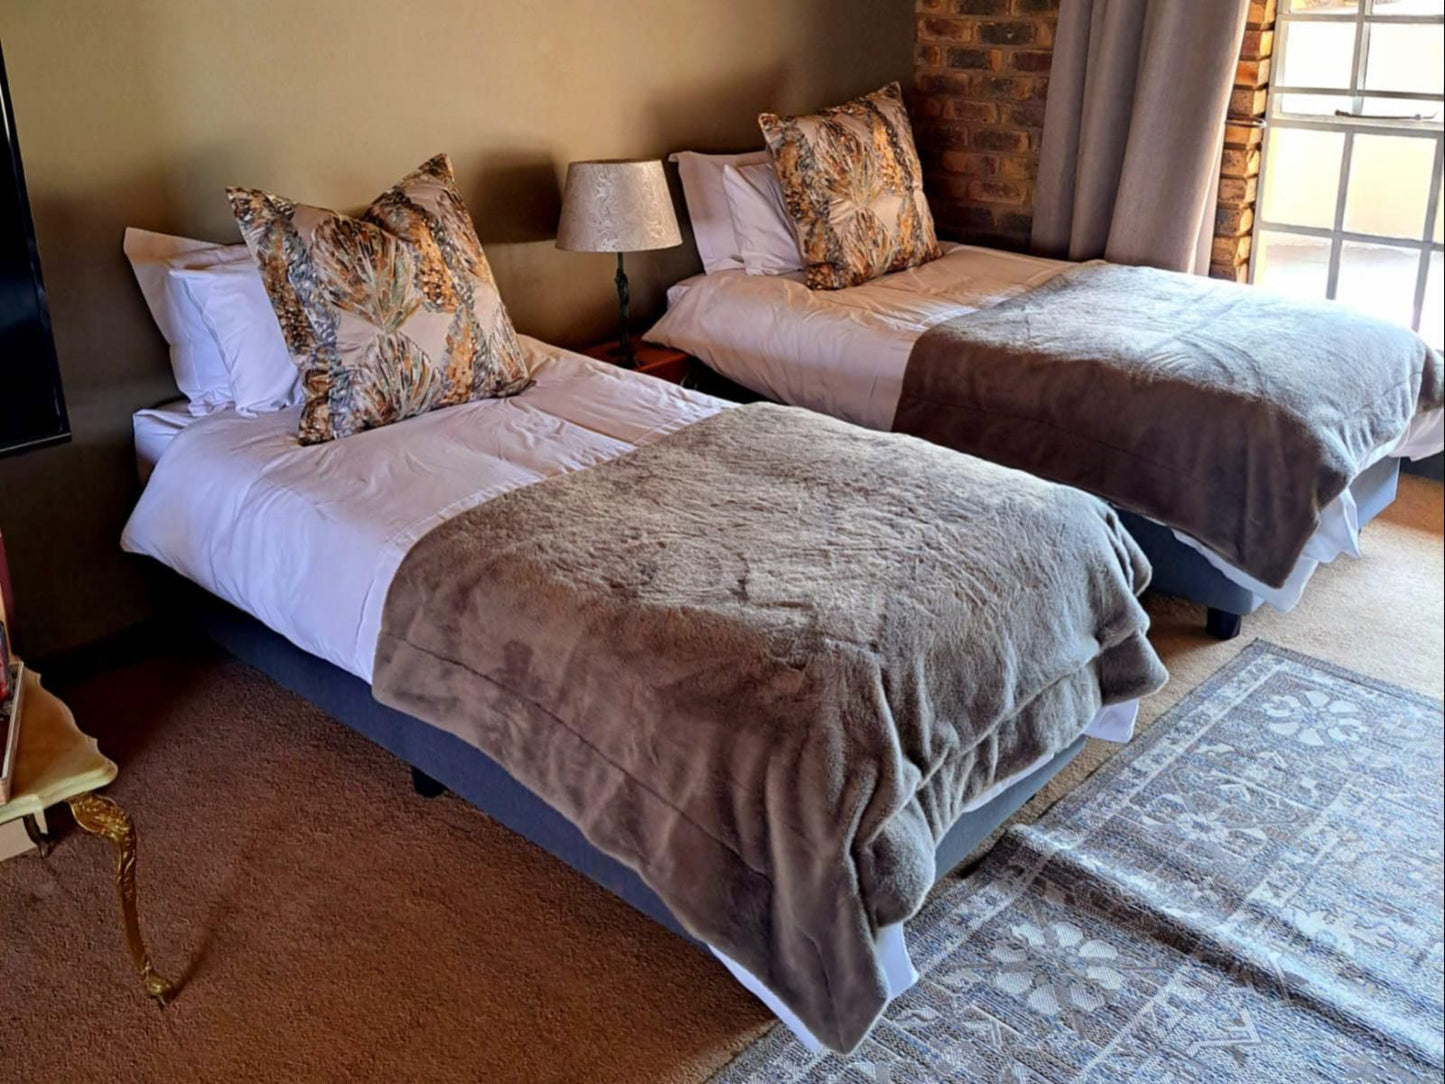 Diamantvallei Landgoed Rayton Gauteng Gauteng South Africa Bedroom